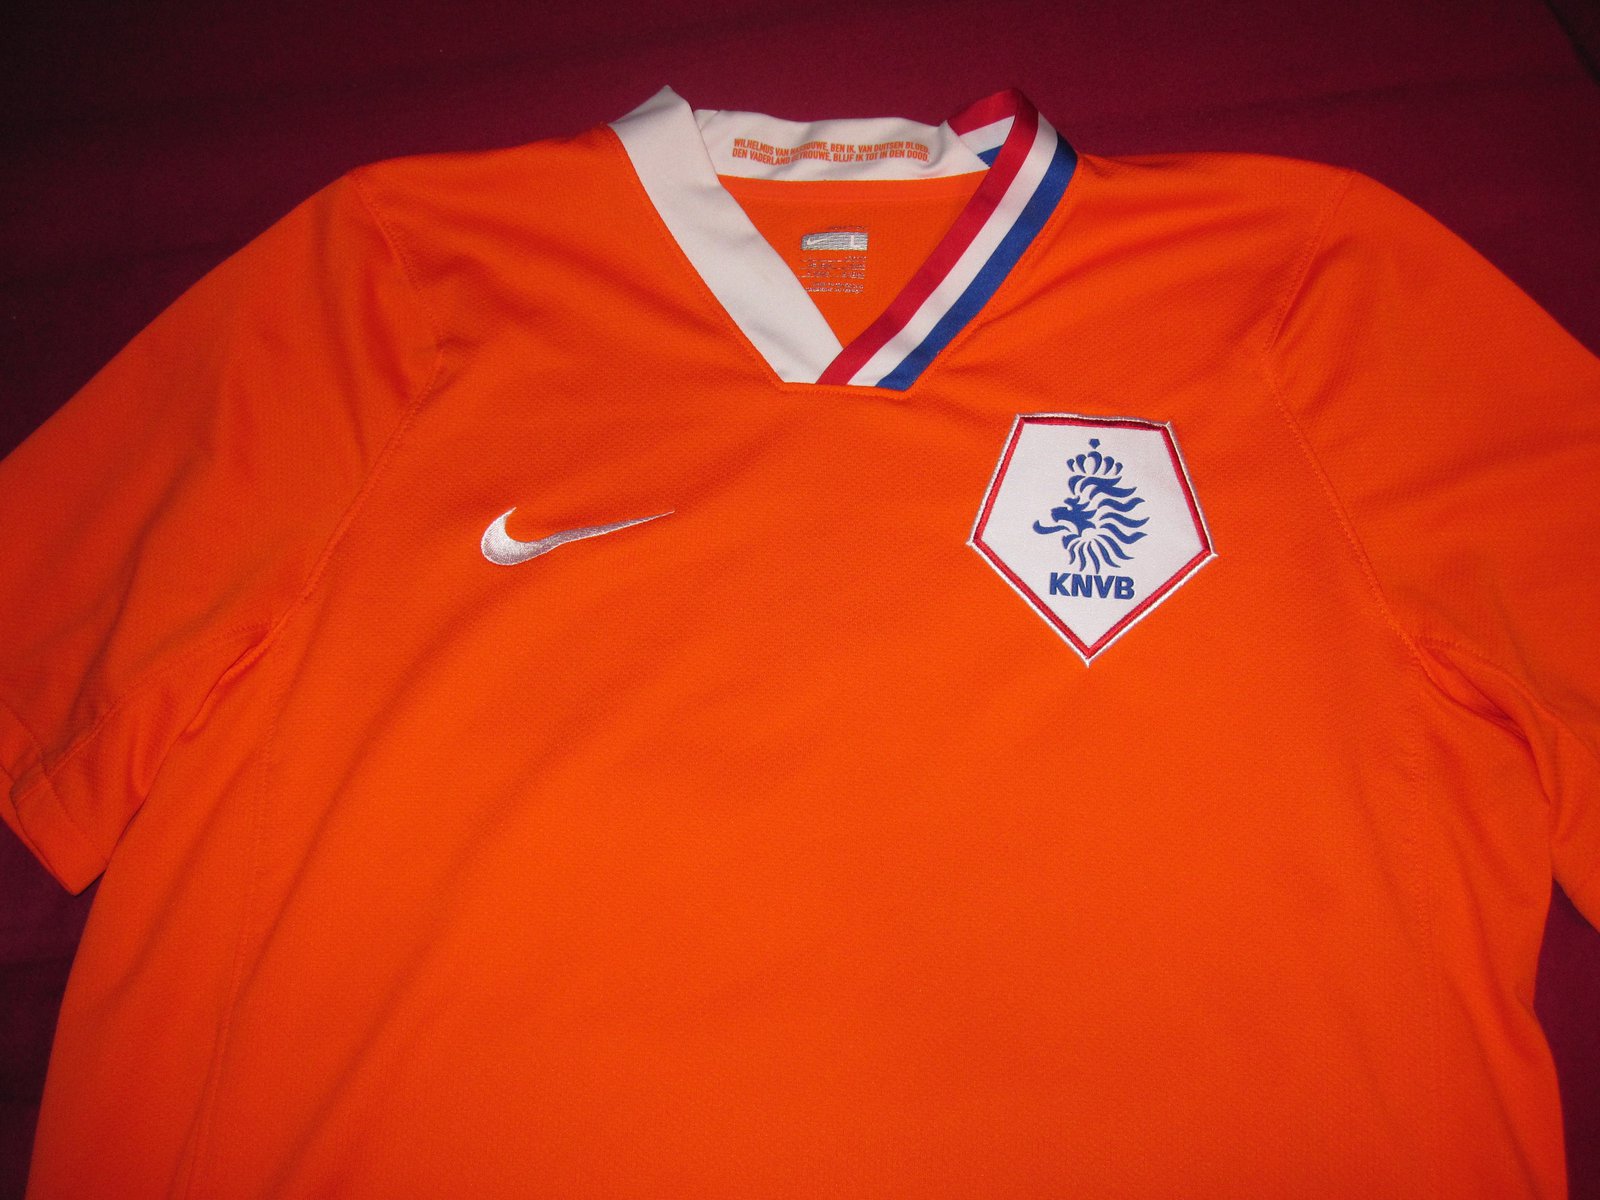 My Netherlands jersey